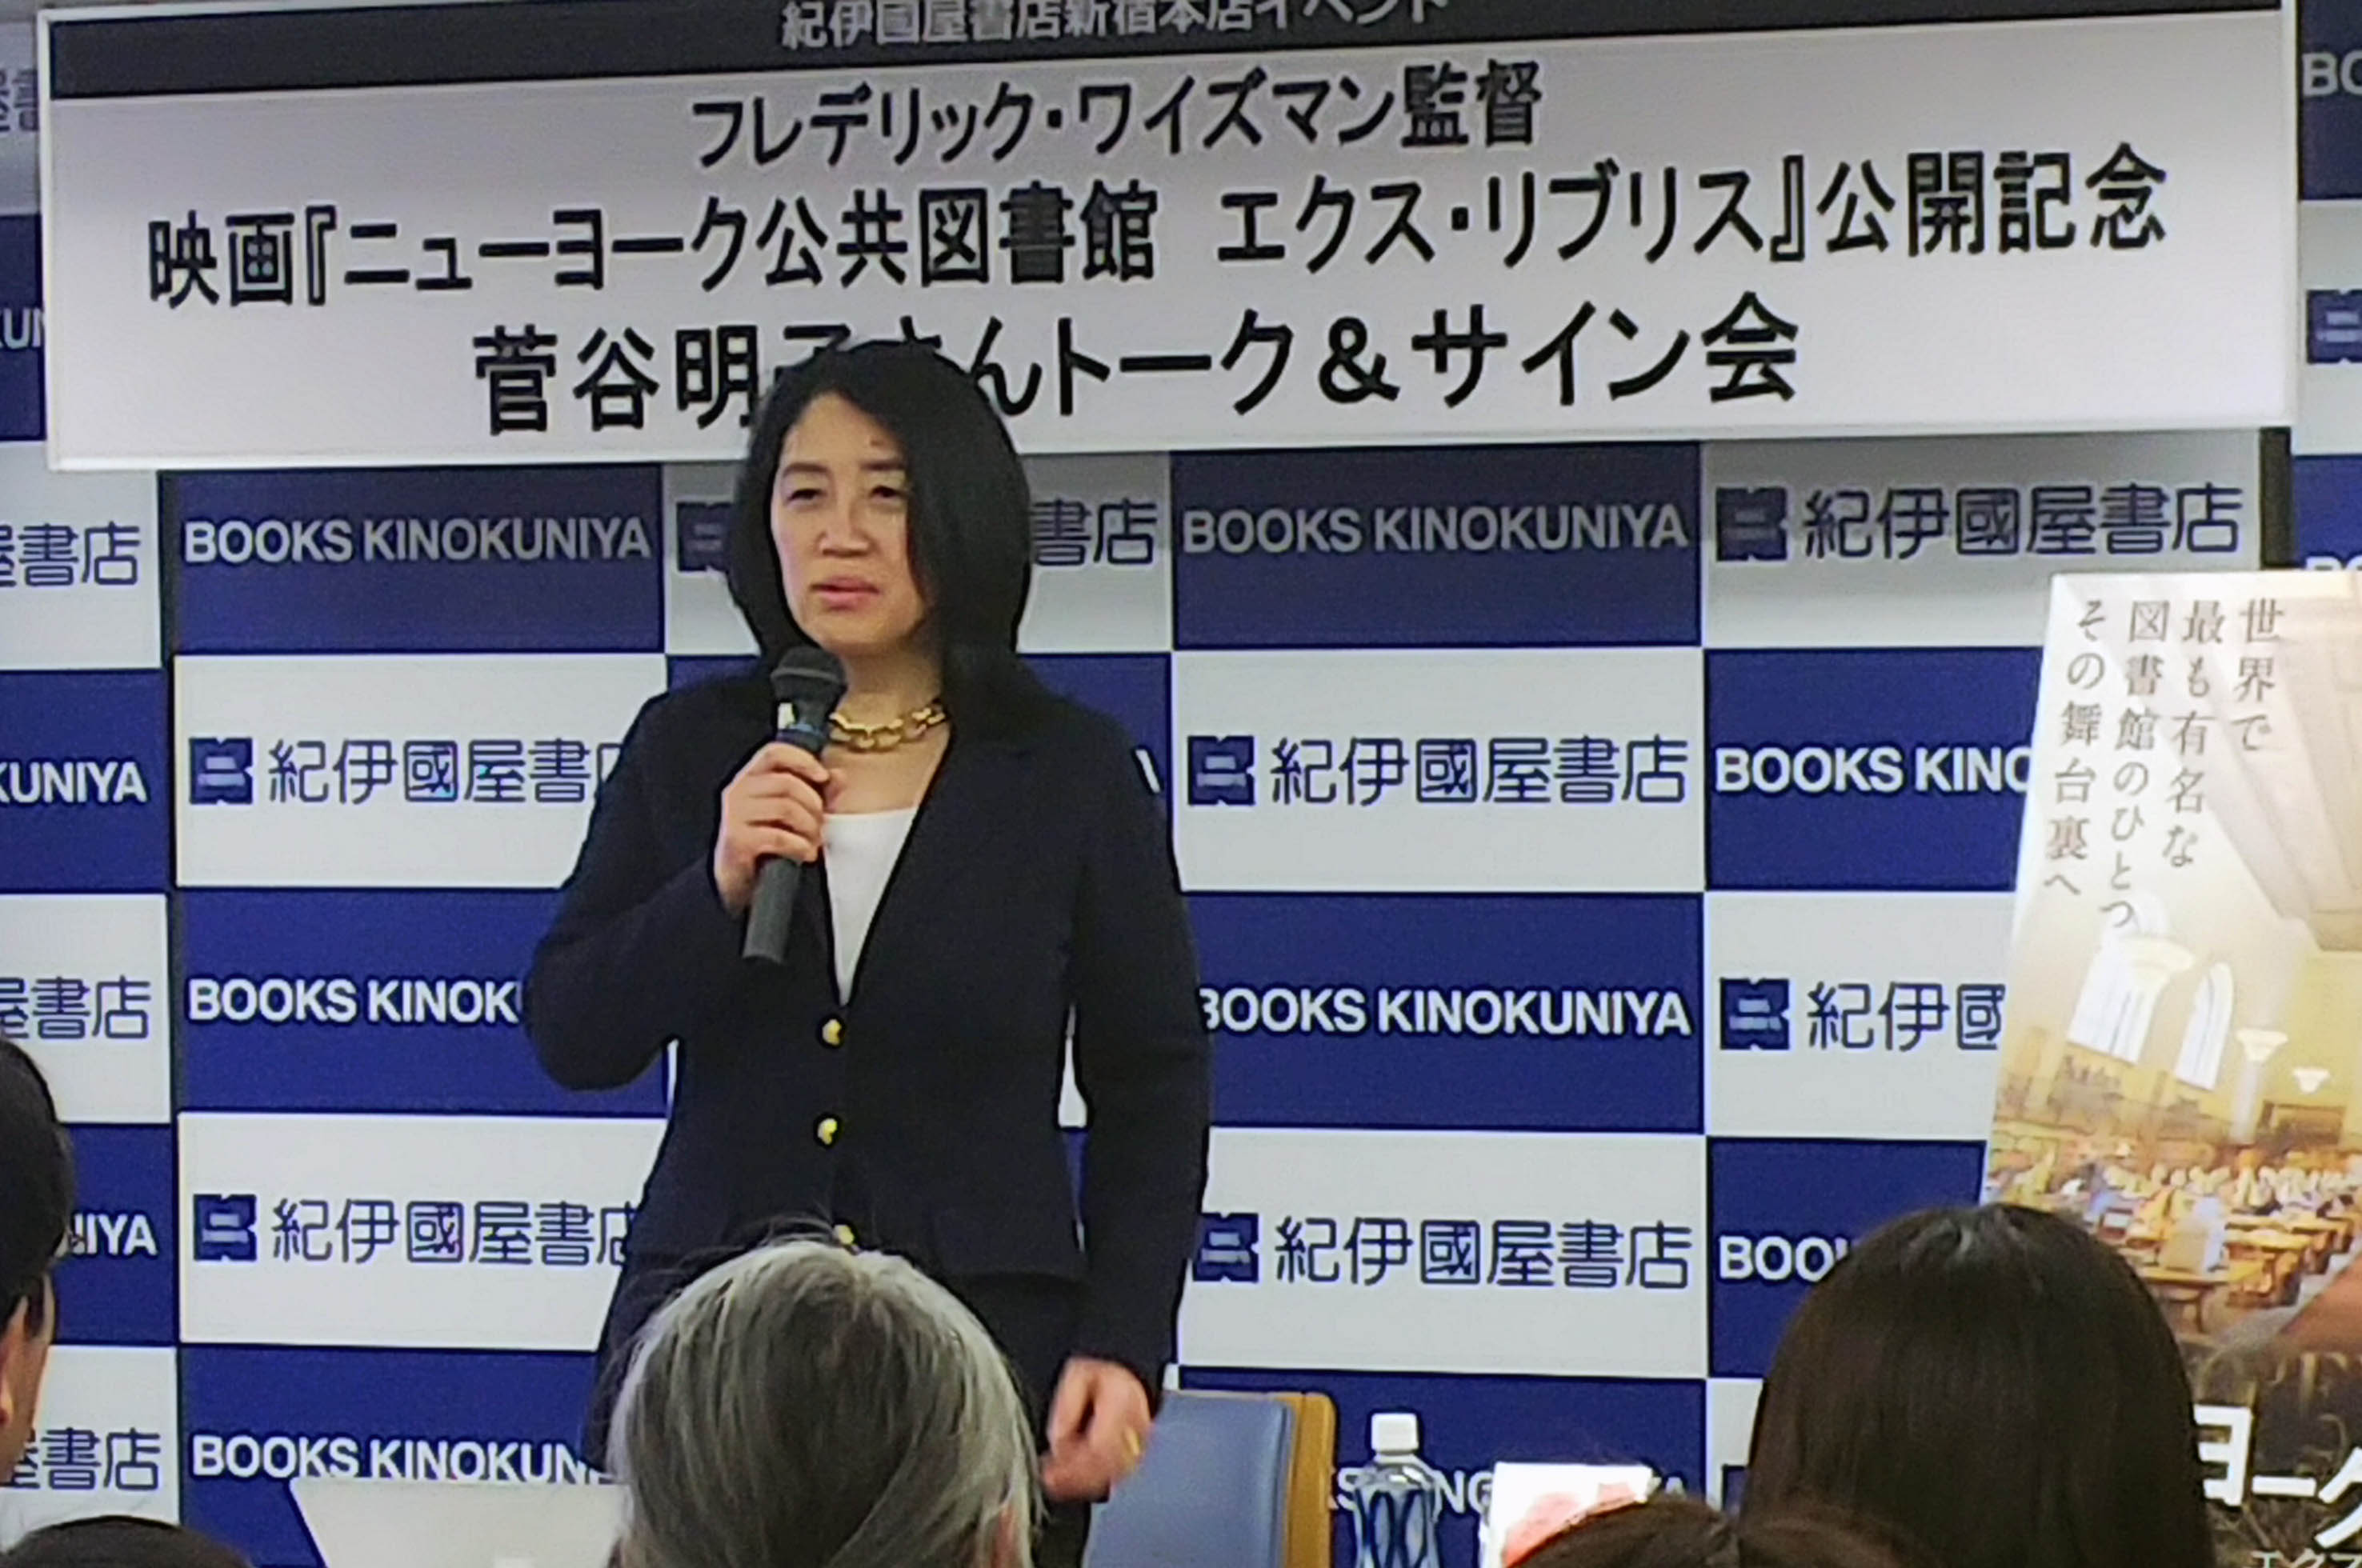 菅谷明子さんトークイベント「未来をつくるニューヨーク公共図書館」